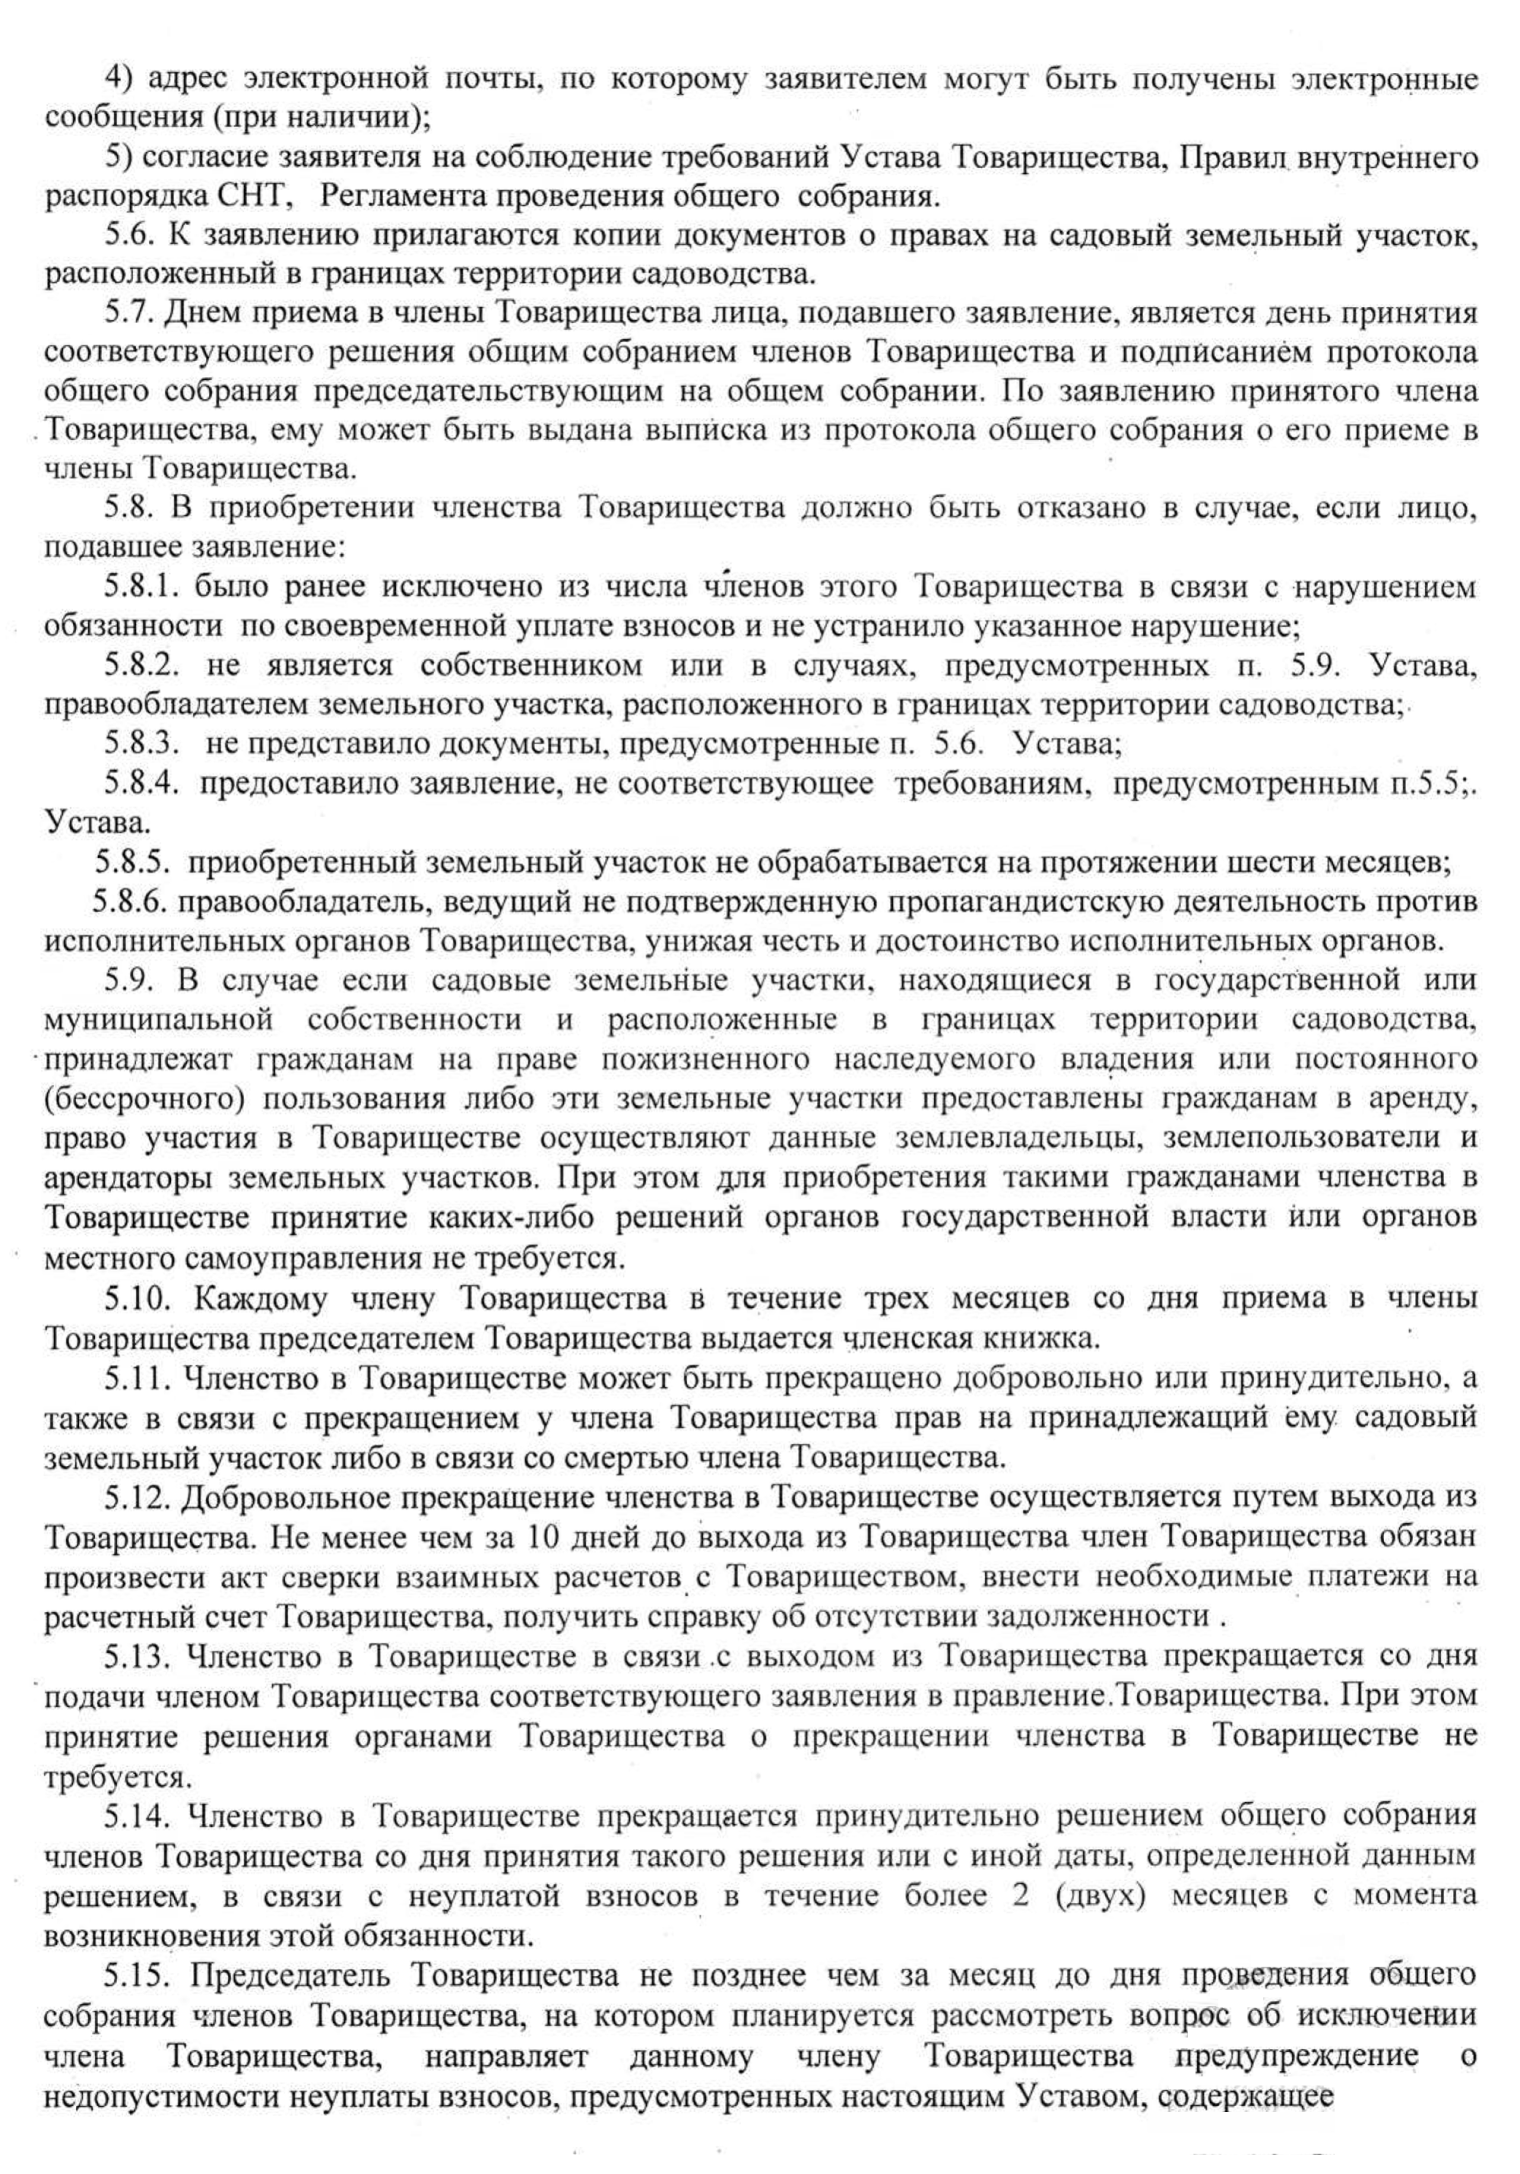 Пример устава СНТ в Ростовской области. Источник: snt-drugba.ru